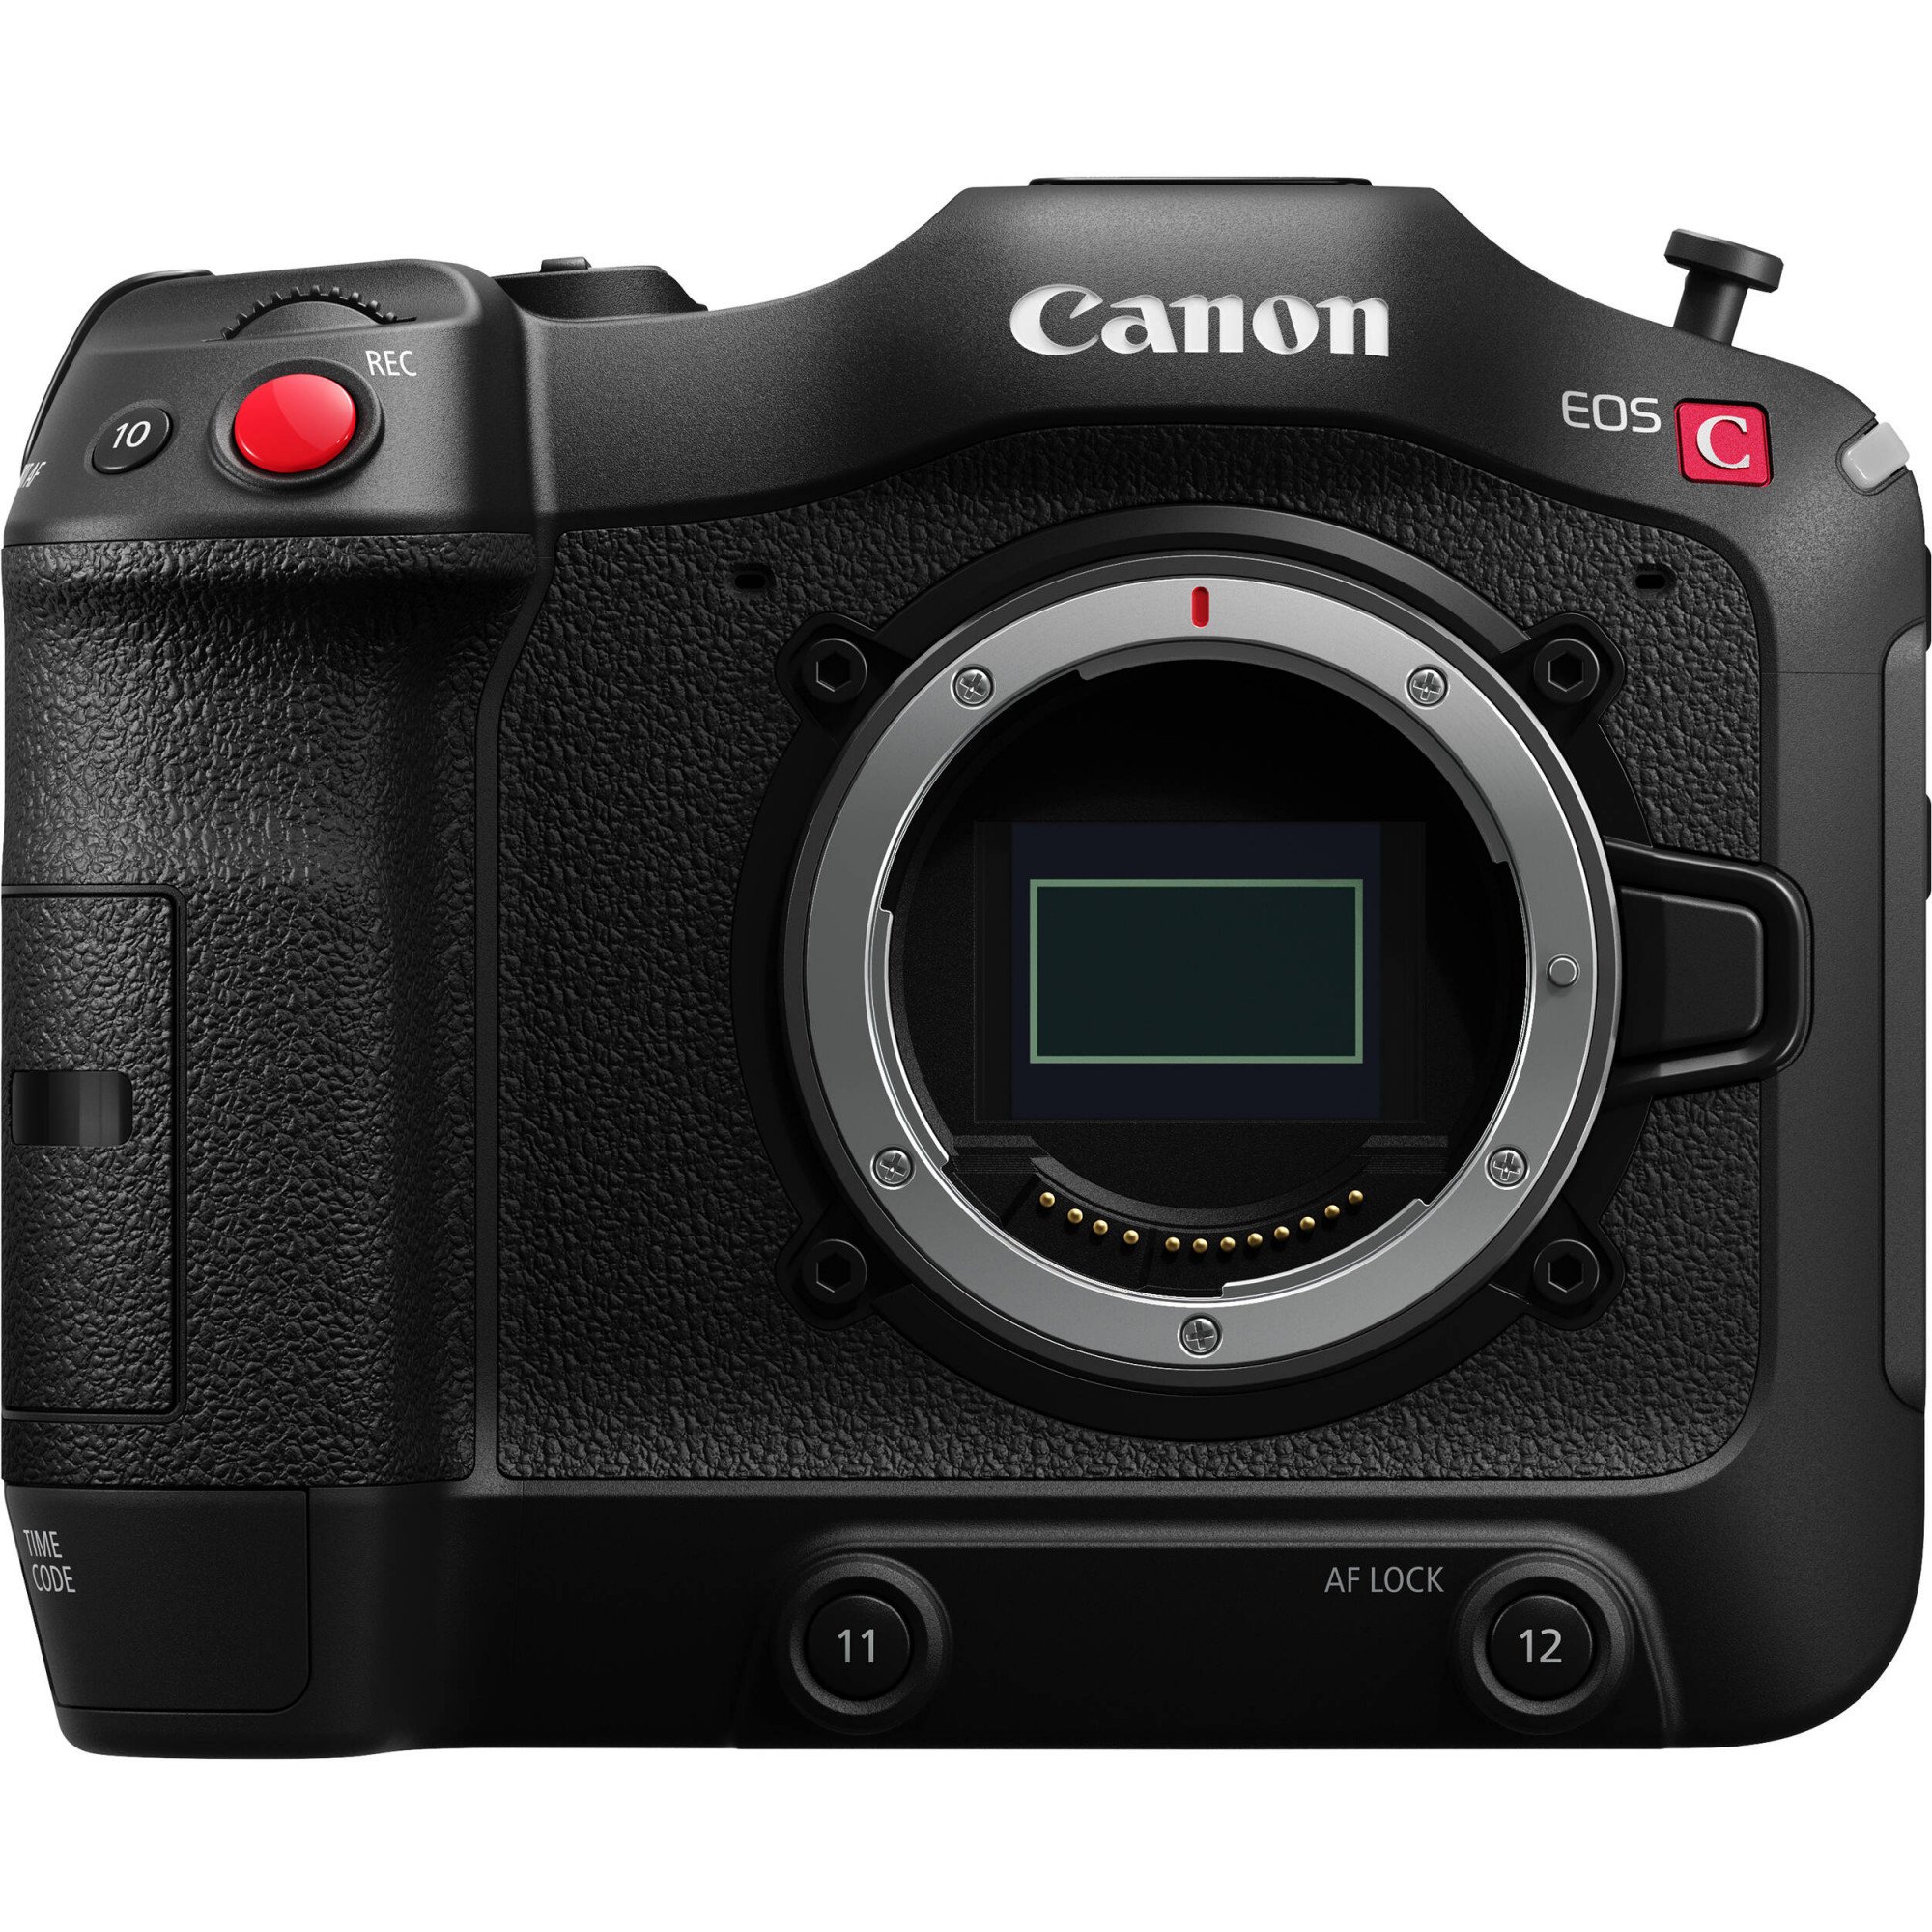 Canon EOS C70 (Mới 100%) Bảo hành chính hãng 02 năm trên toàn quốc Cover